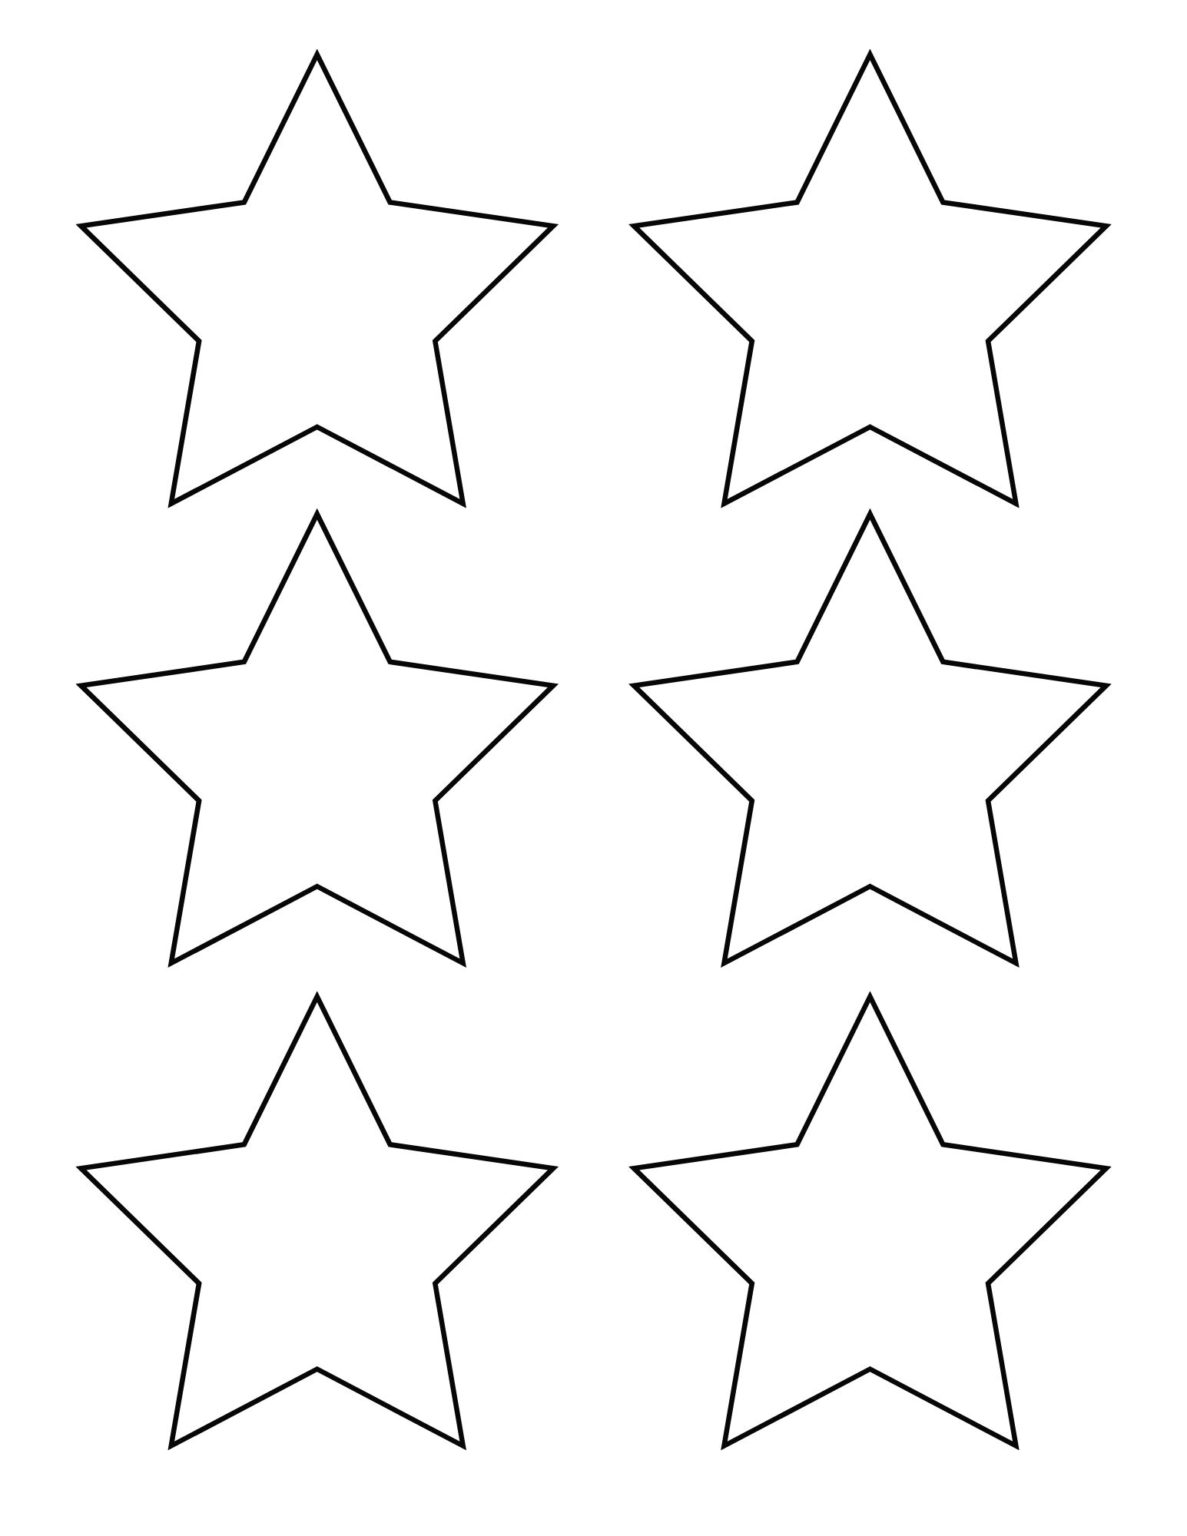 5 Pointed Star Template Free Printable (Small, Medium, Large) - OriginalMOM